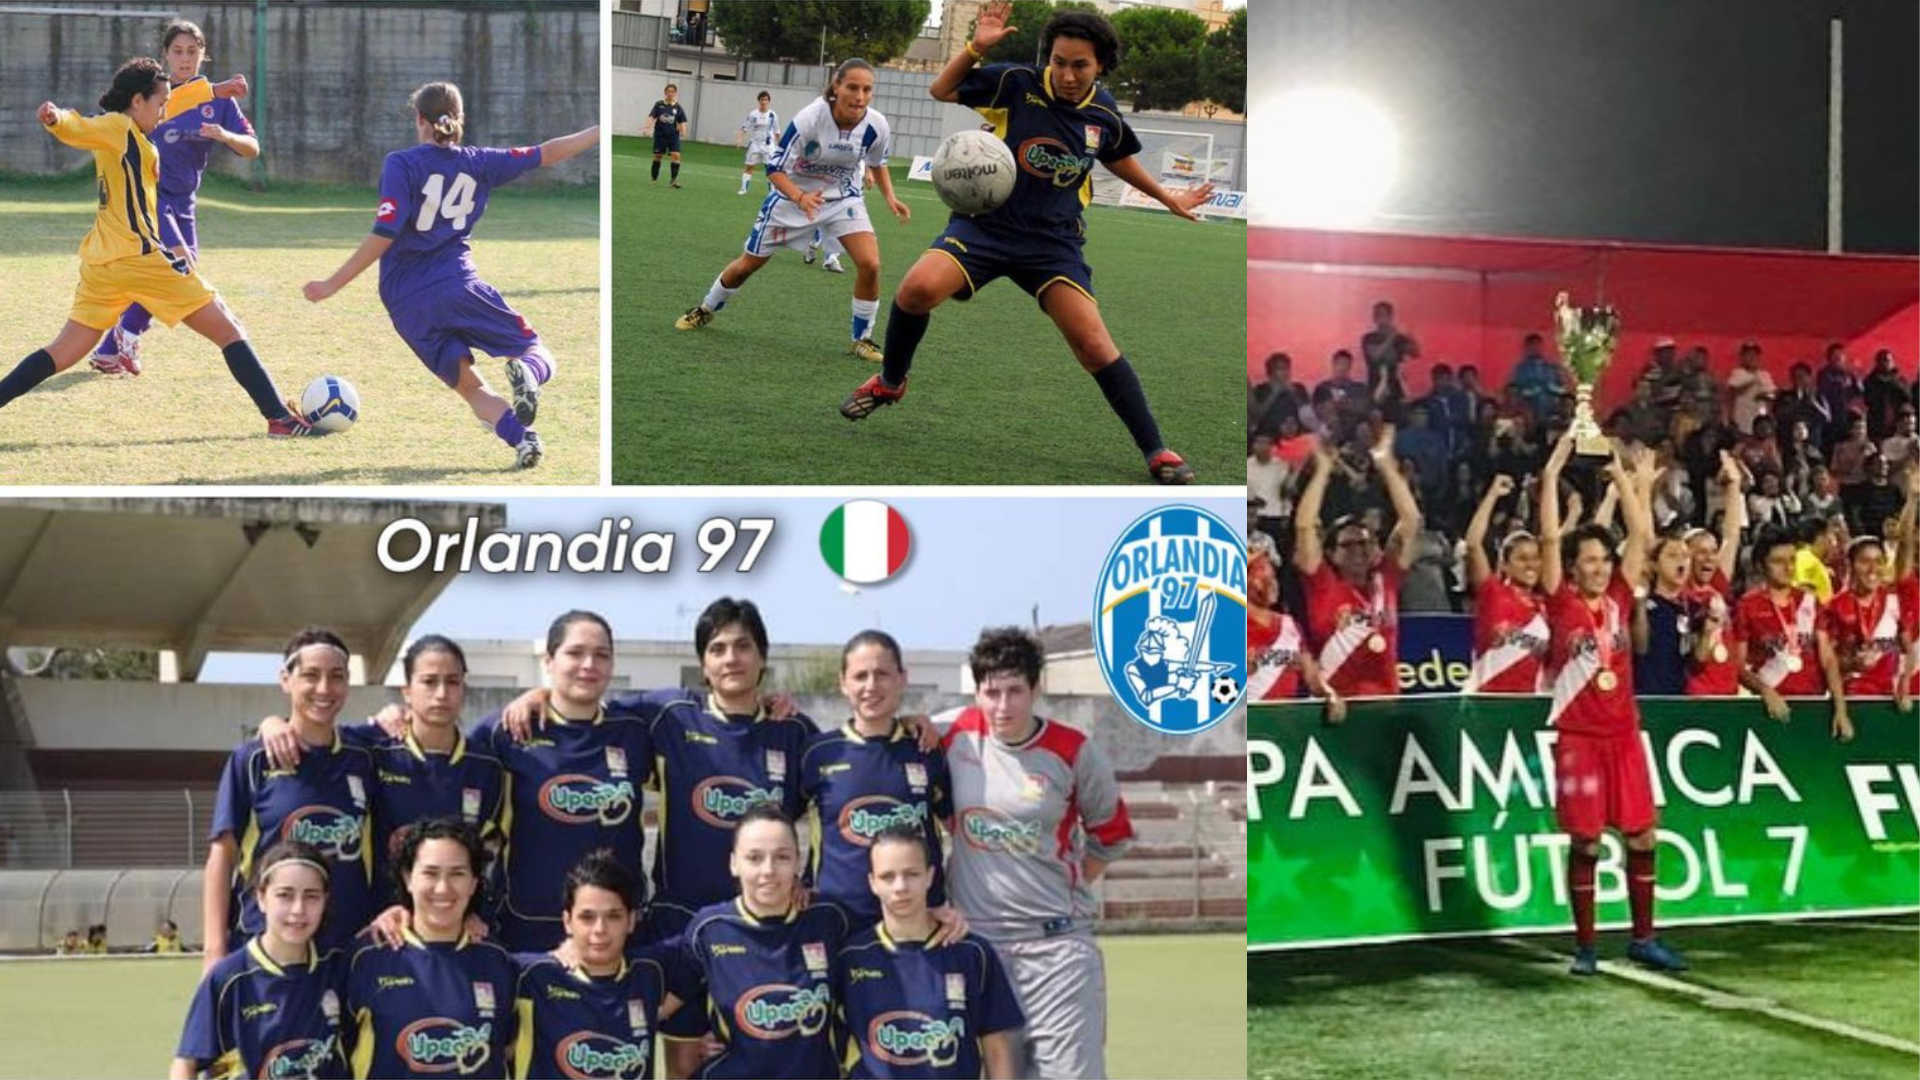 Adriana Davila ha giocato per la squadra Orlando 97 e ha partecipato alla Coppa Italia.  Ha vinto anche la Coppa America.  Segui i preferiti